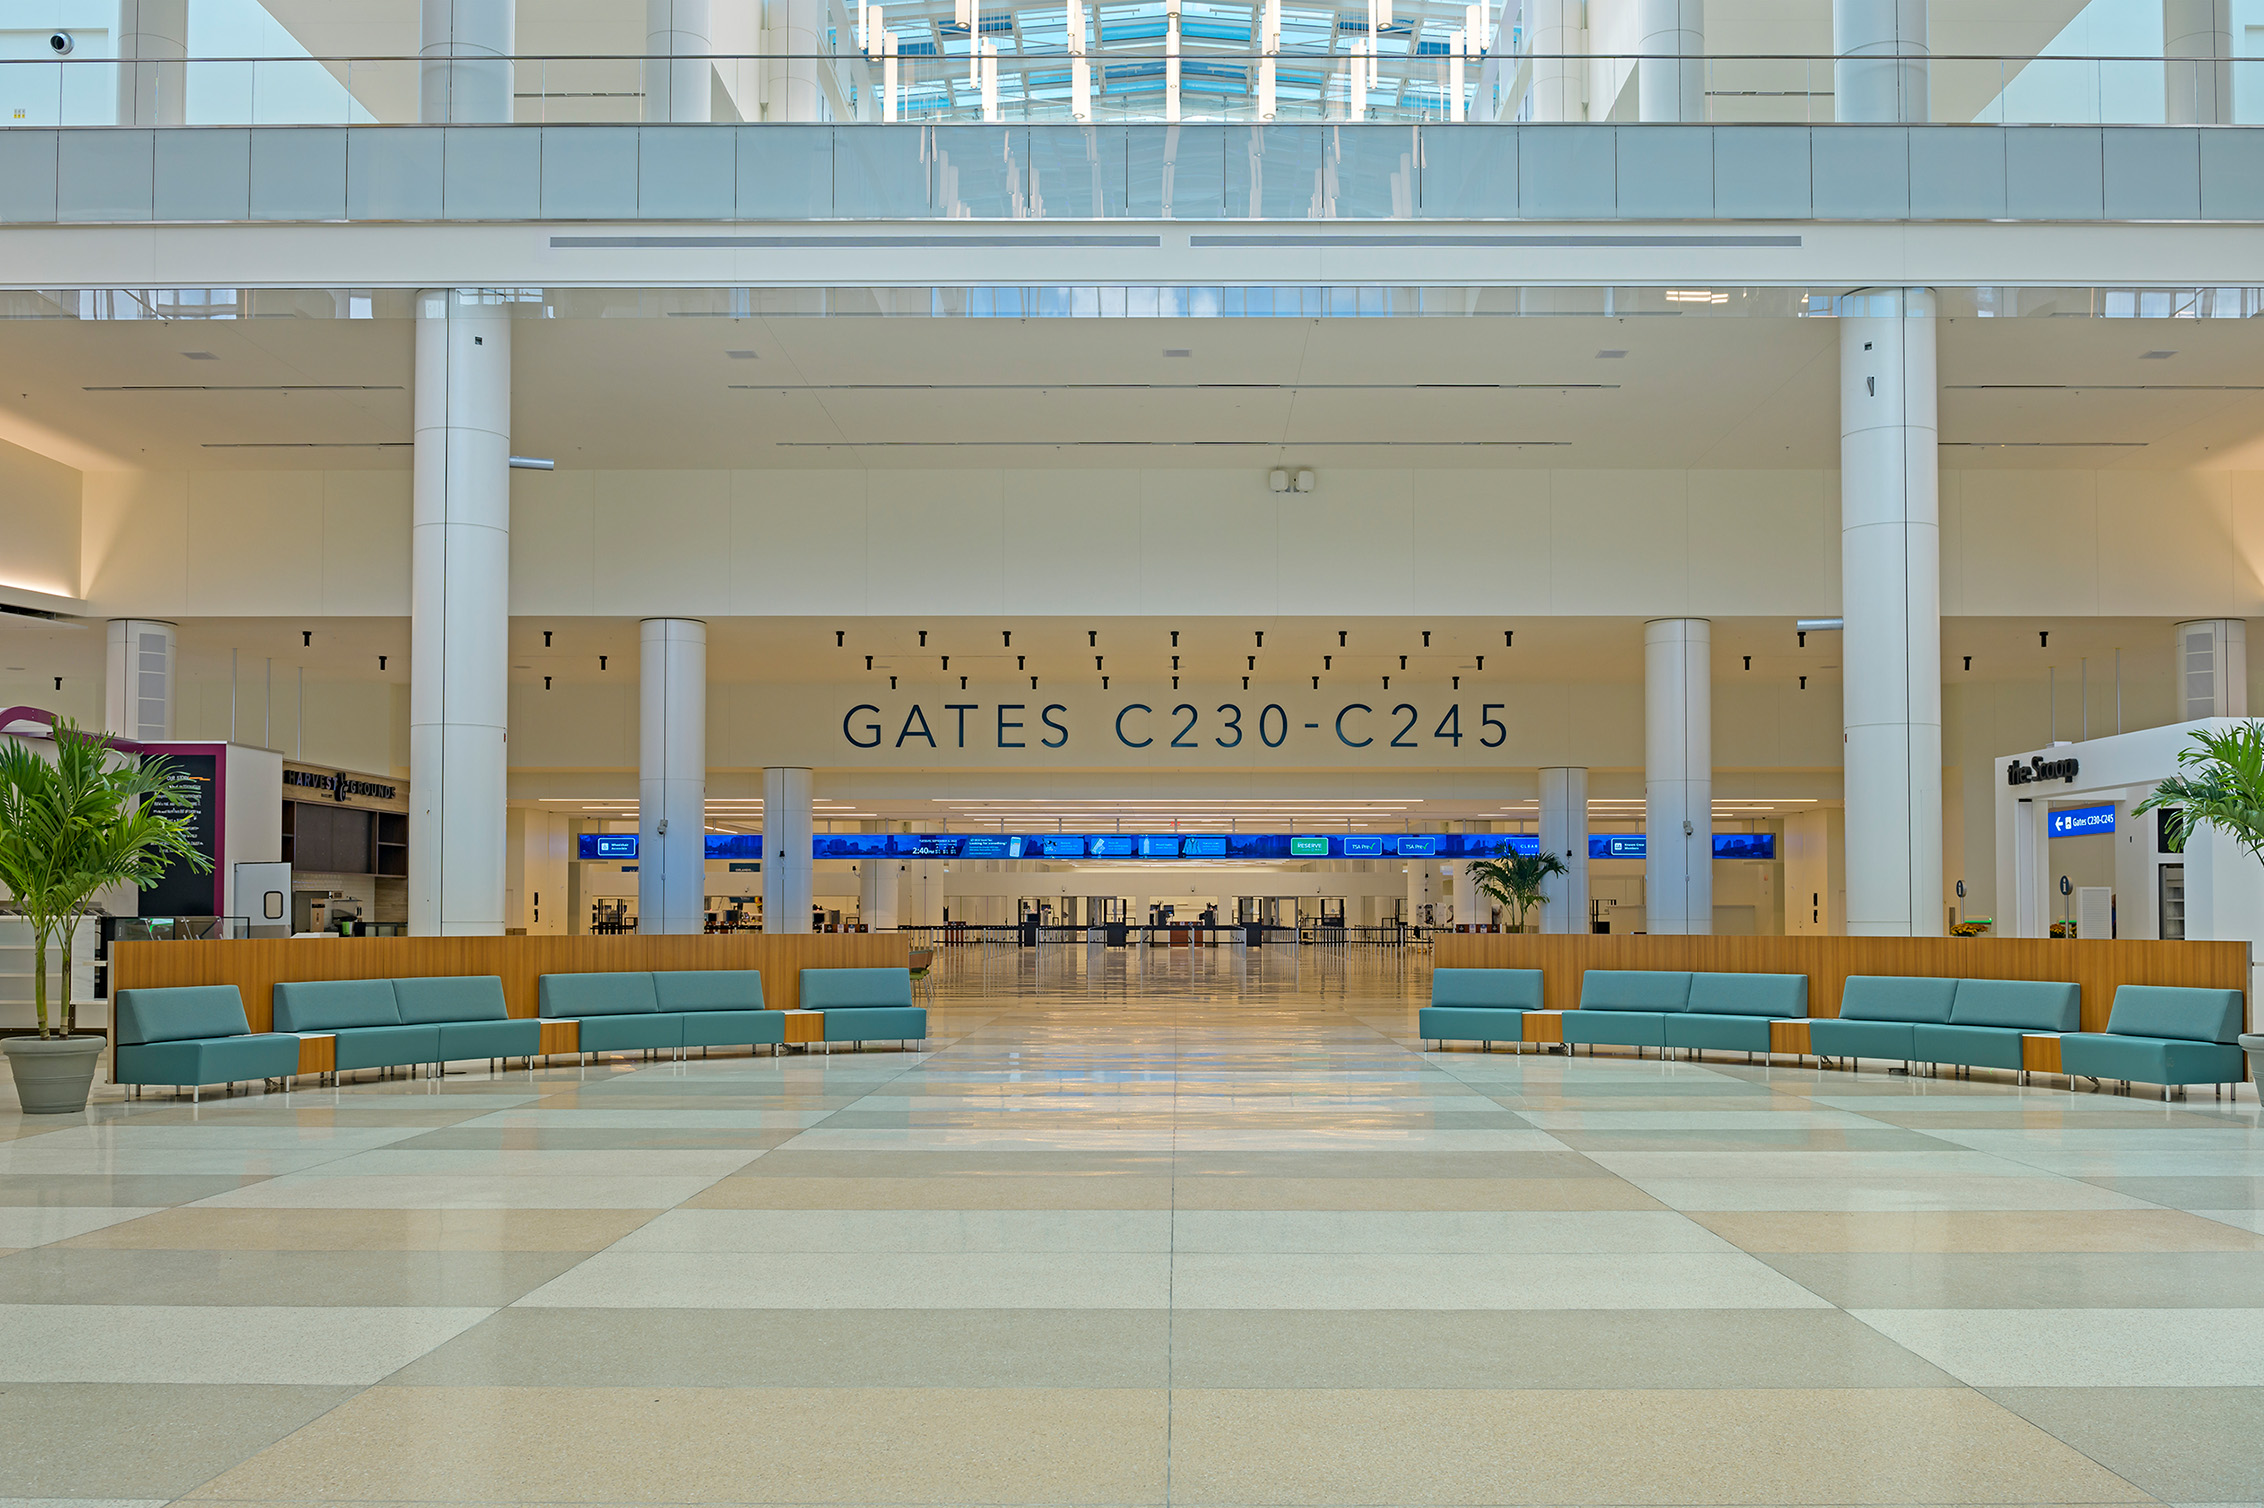 Terminal C - Gates C230-C245